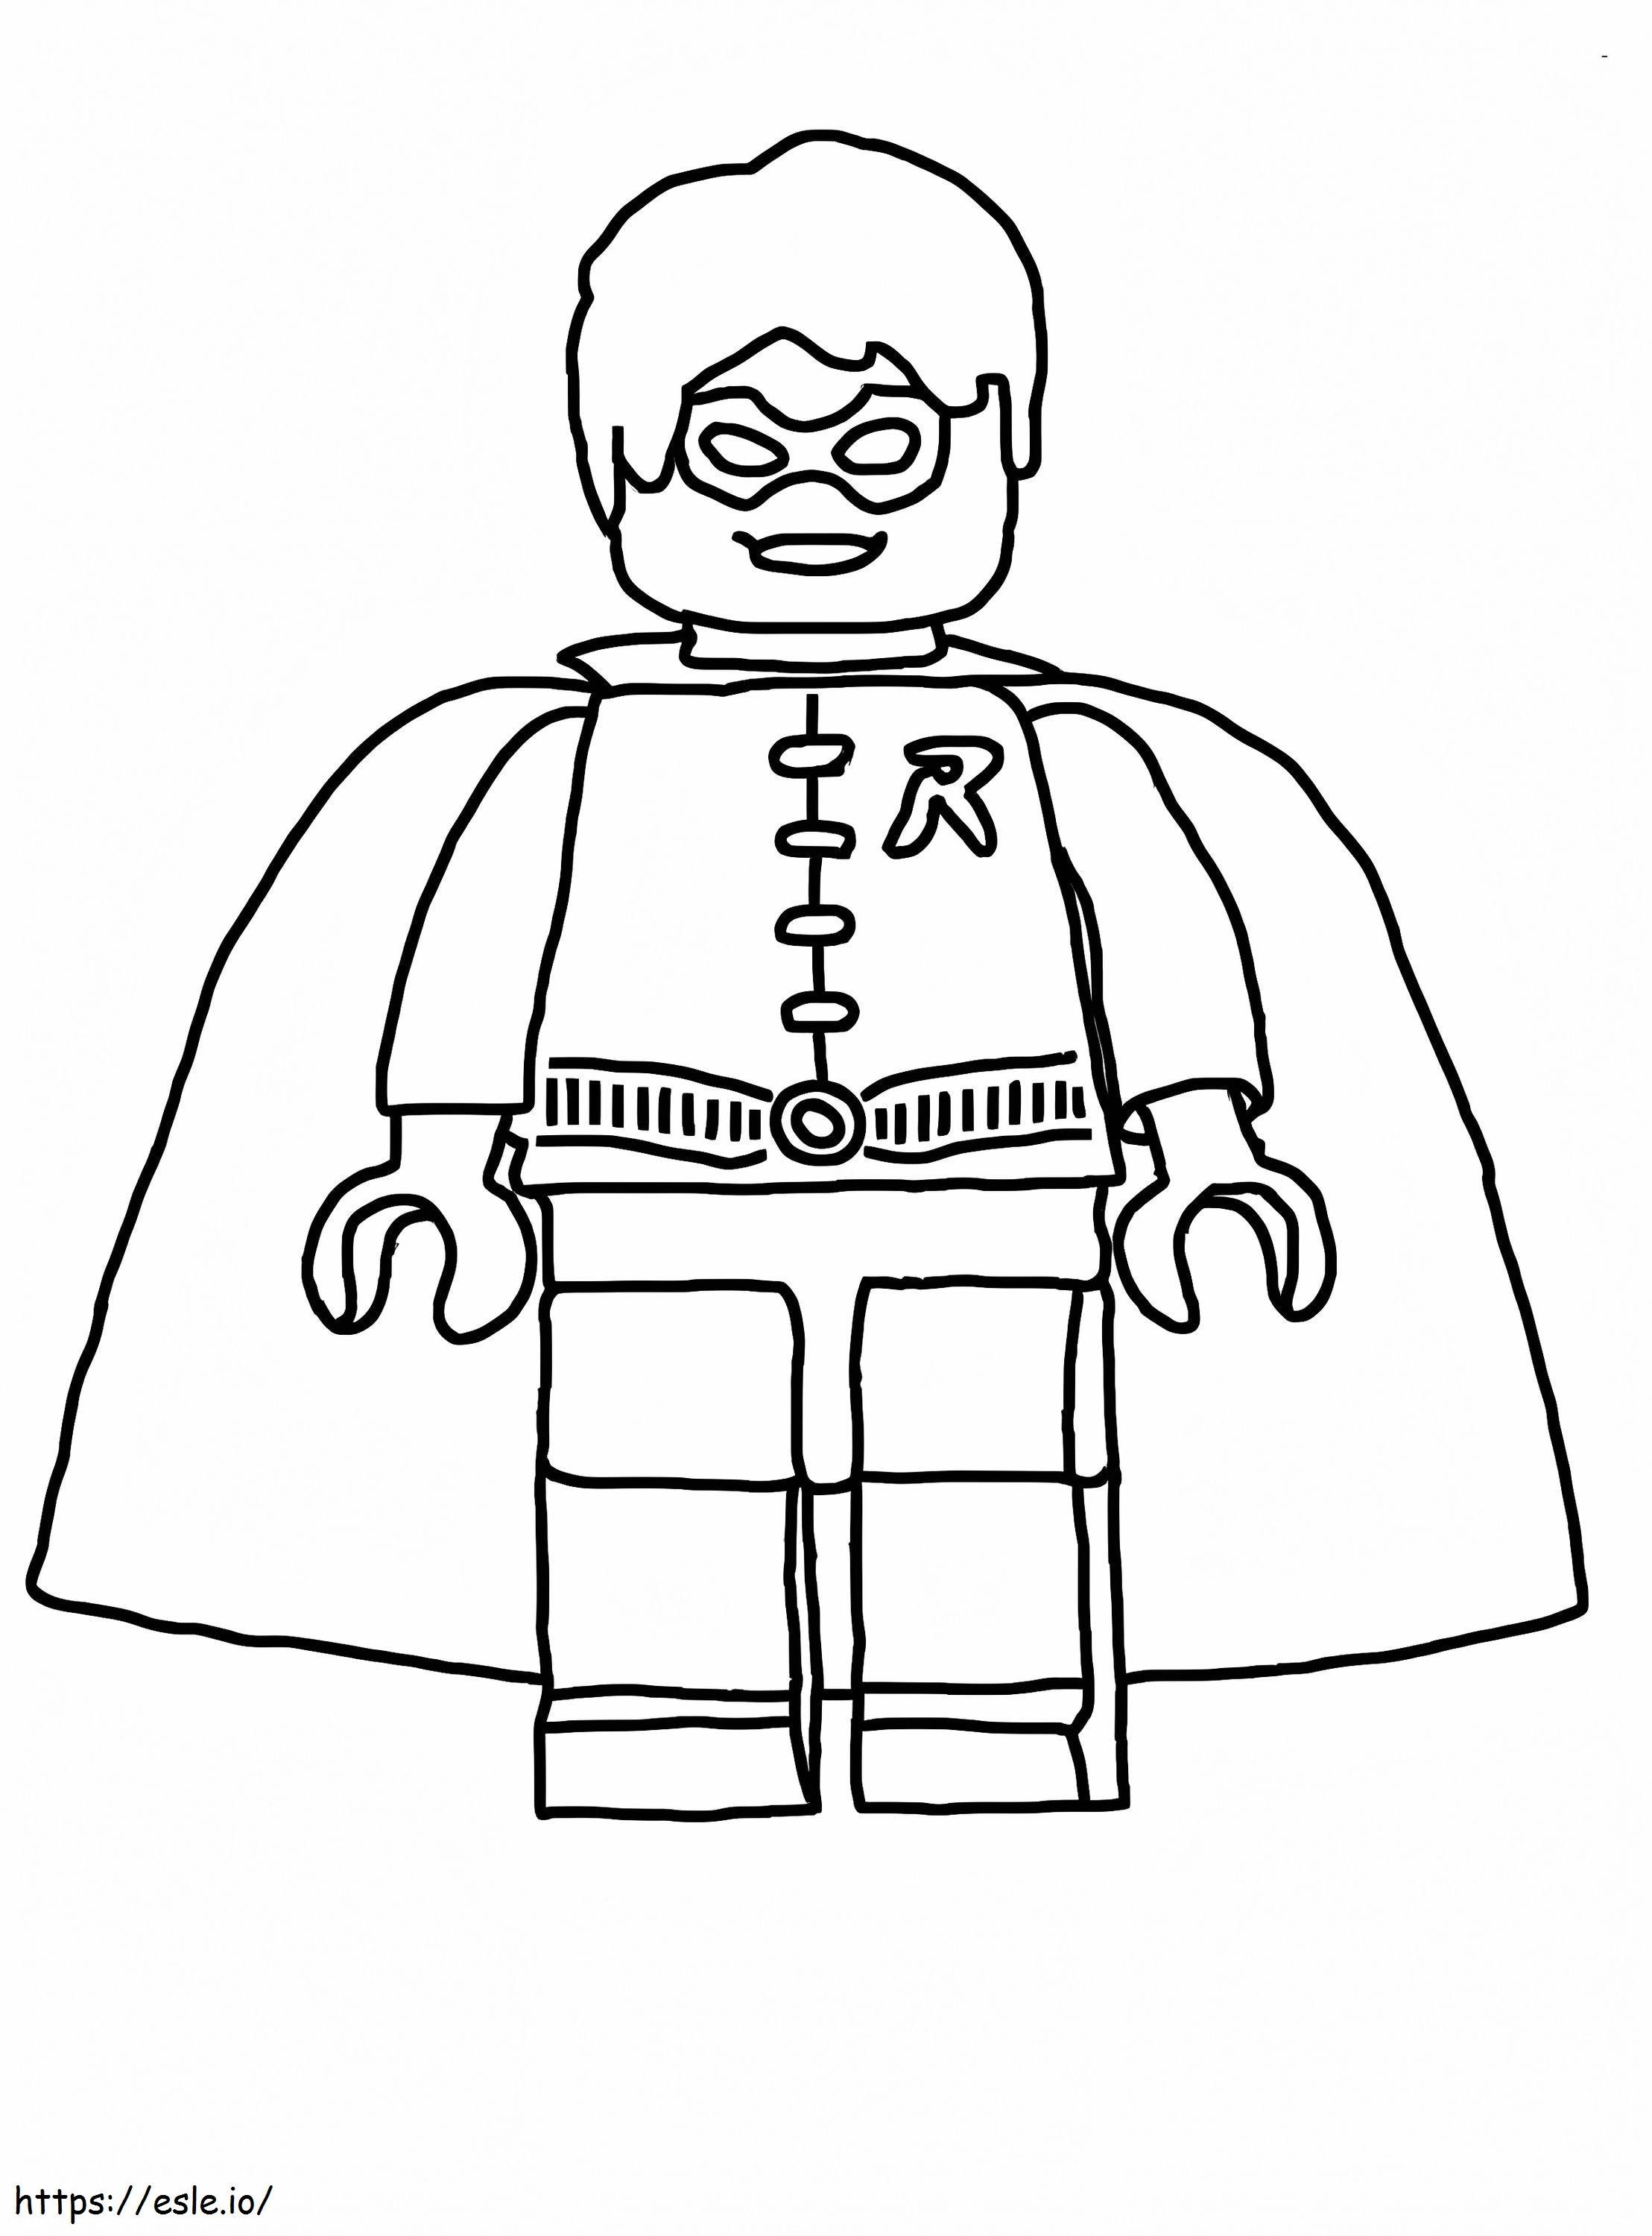 Toller Lego-Robin ausmalbilder